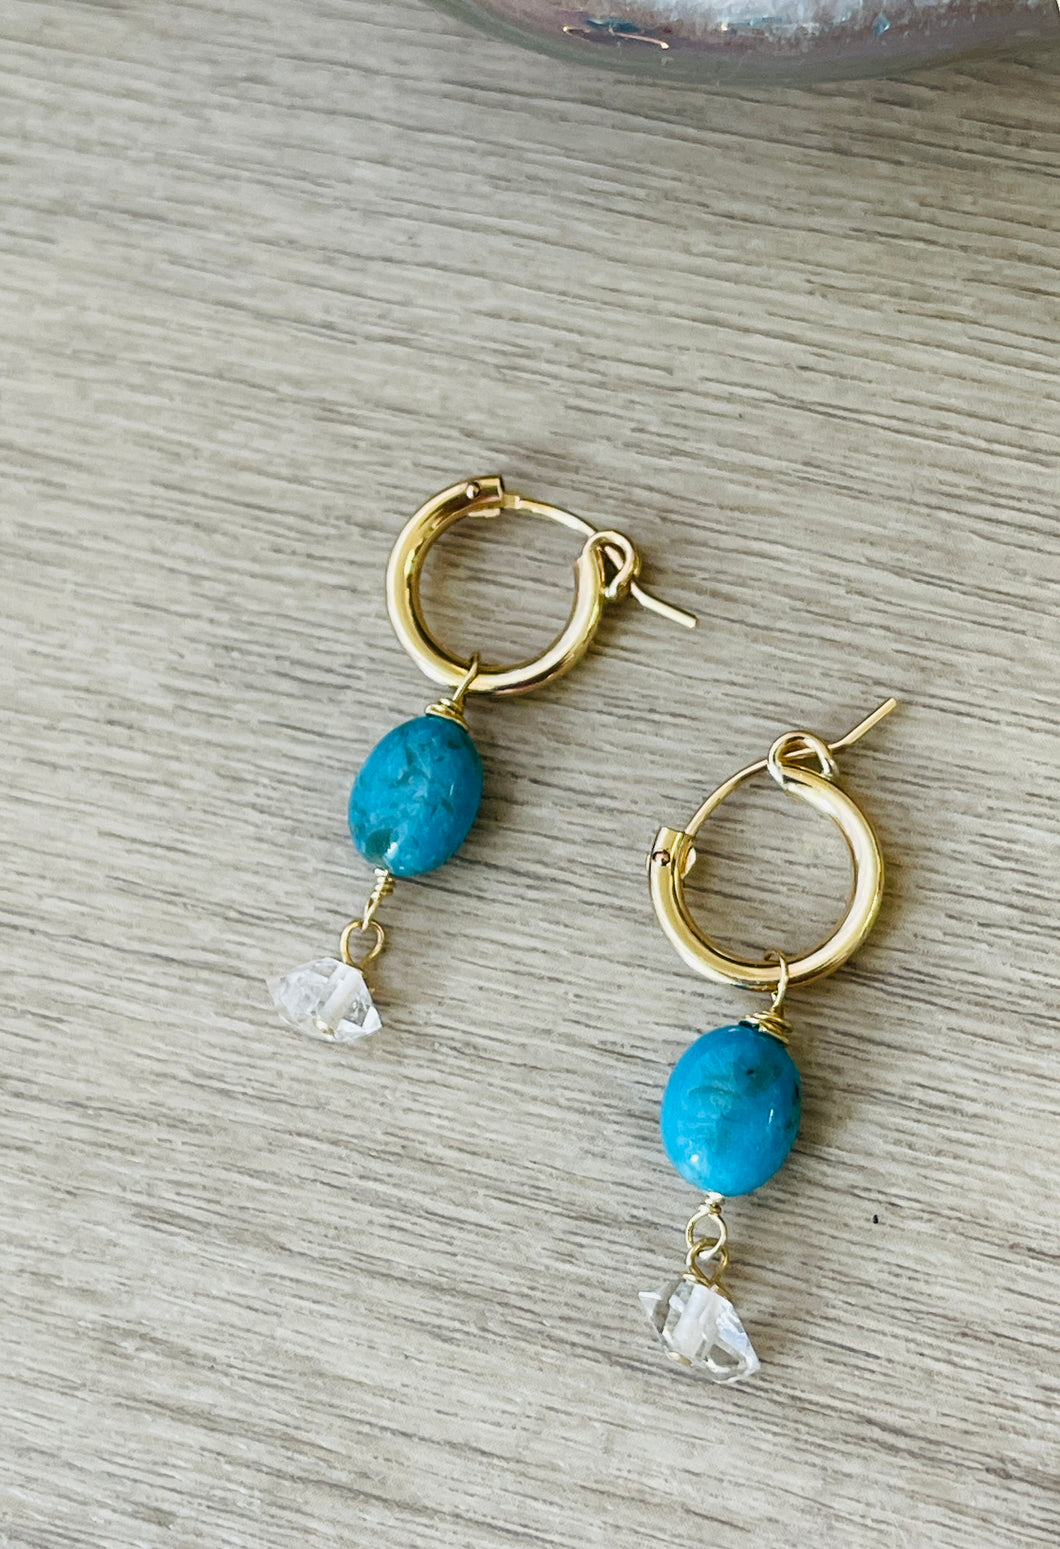 Sleeping Beauty Turquoise with Herkimer Diamond earrings